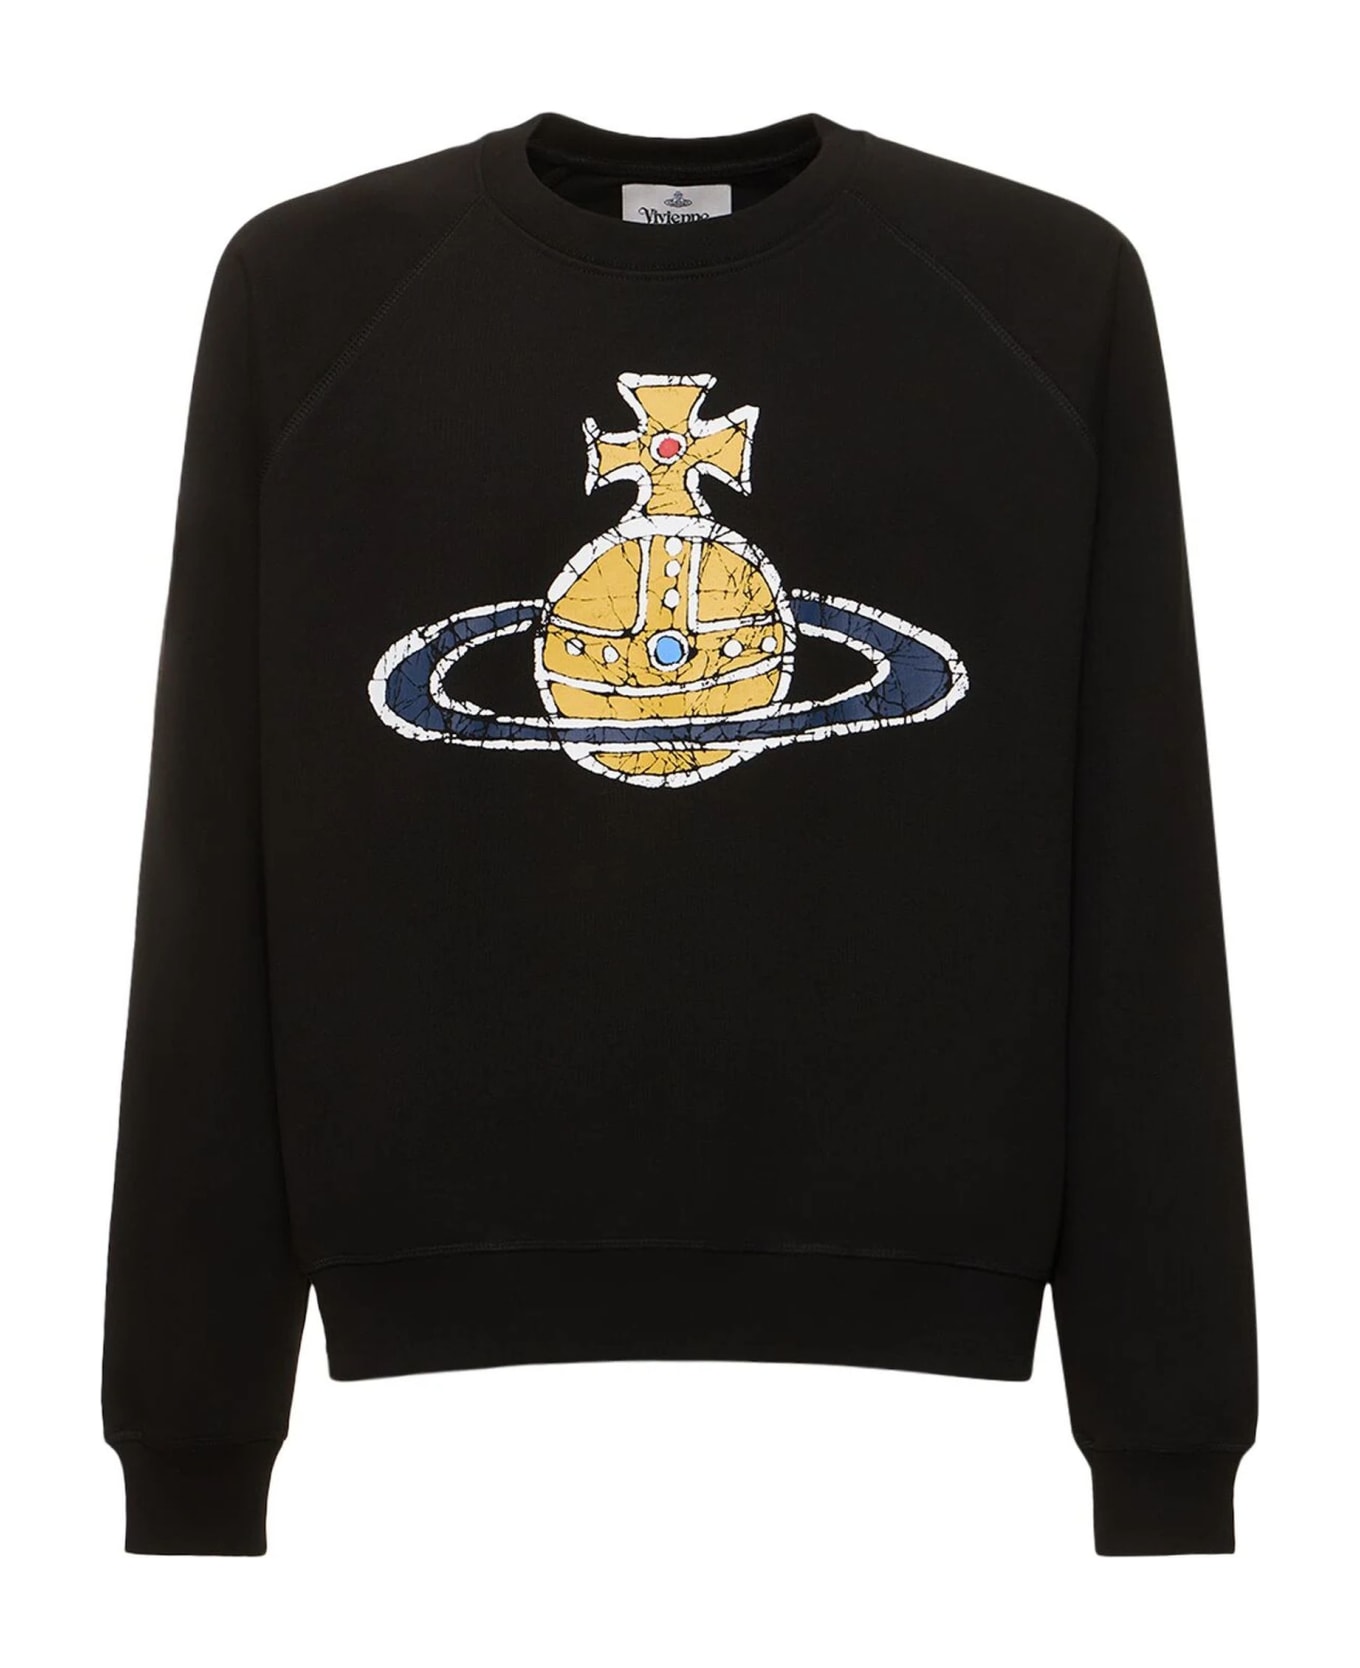 Vivienne Westwood Sweaters Black - Black フリース